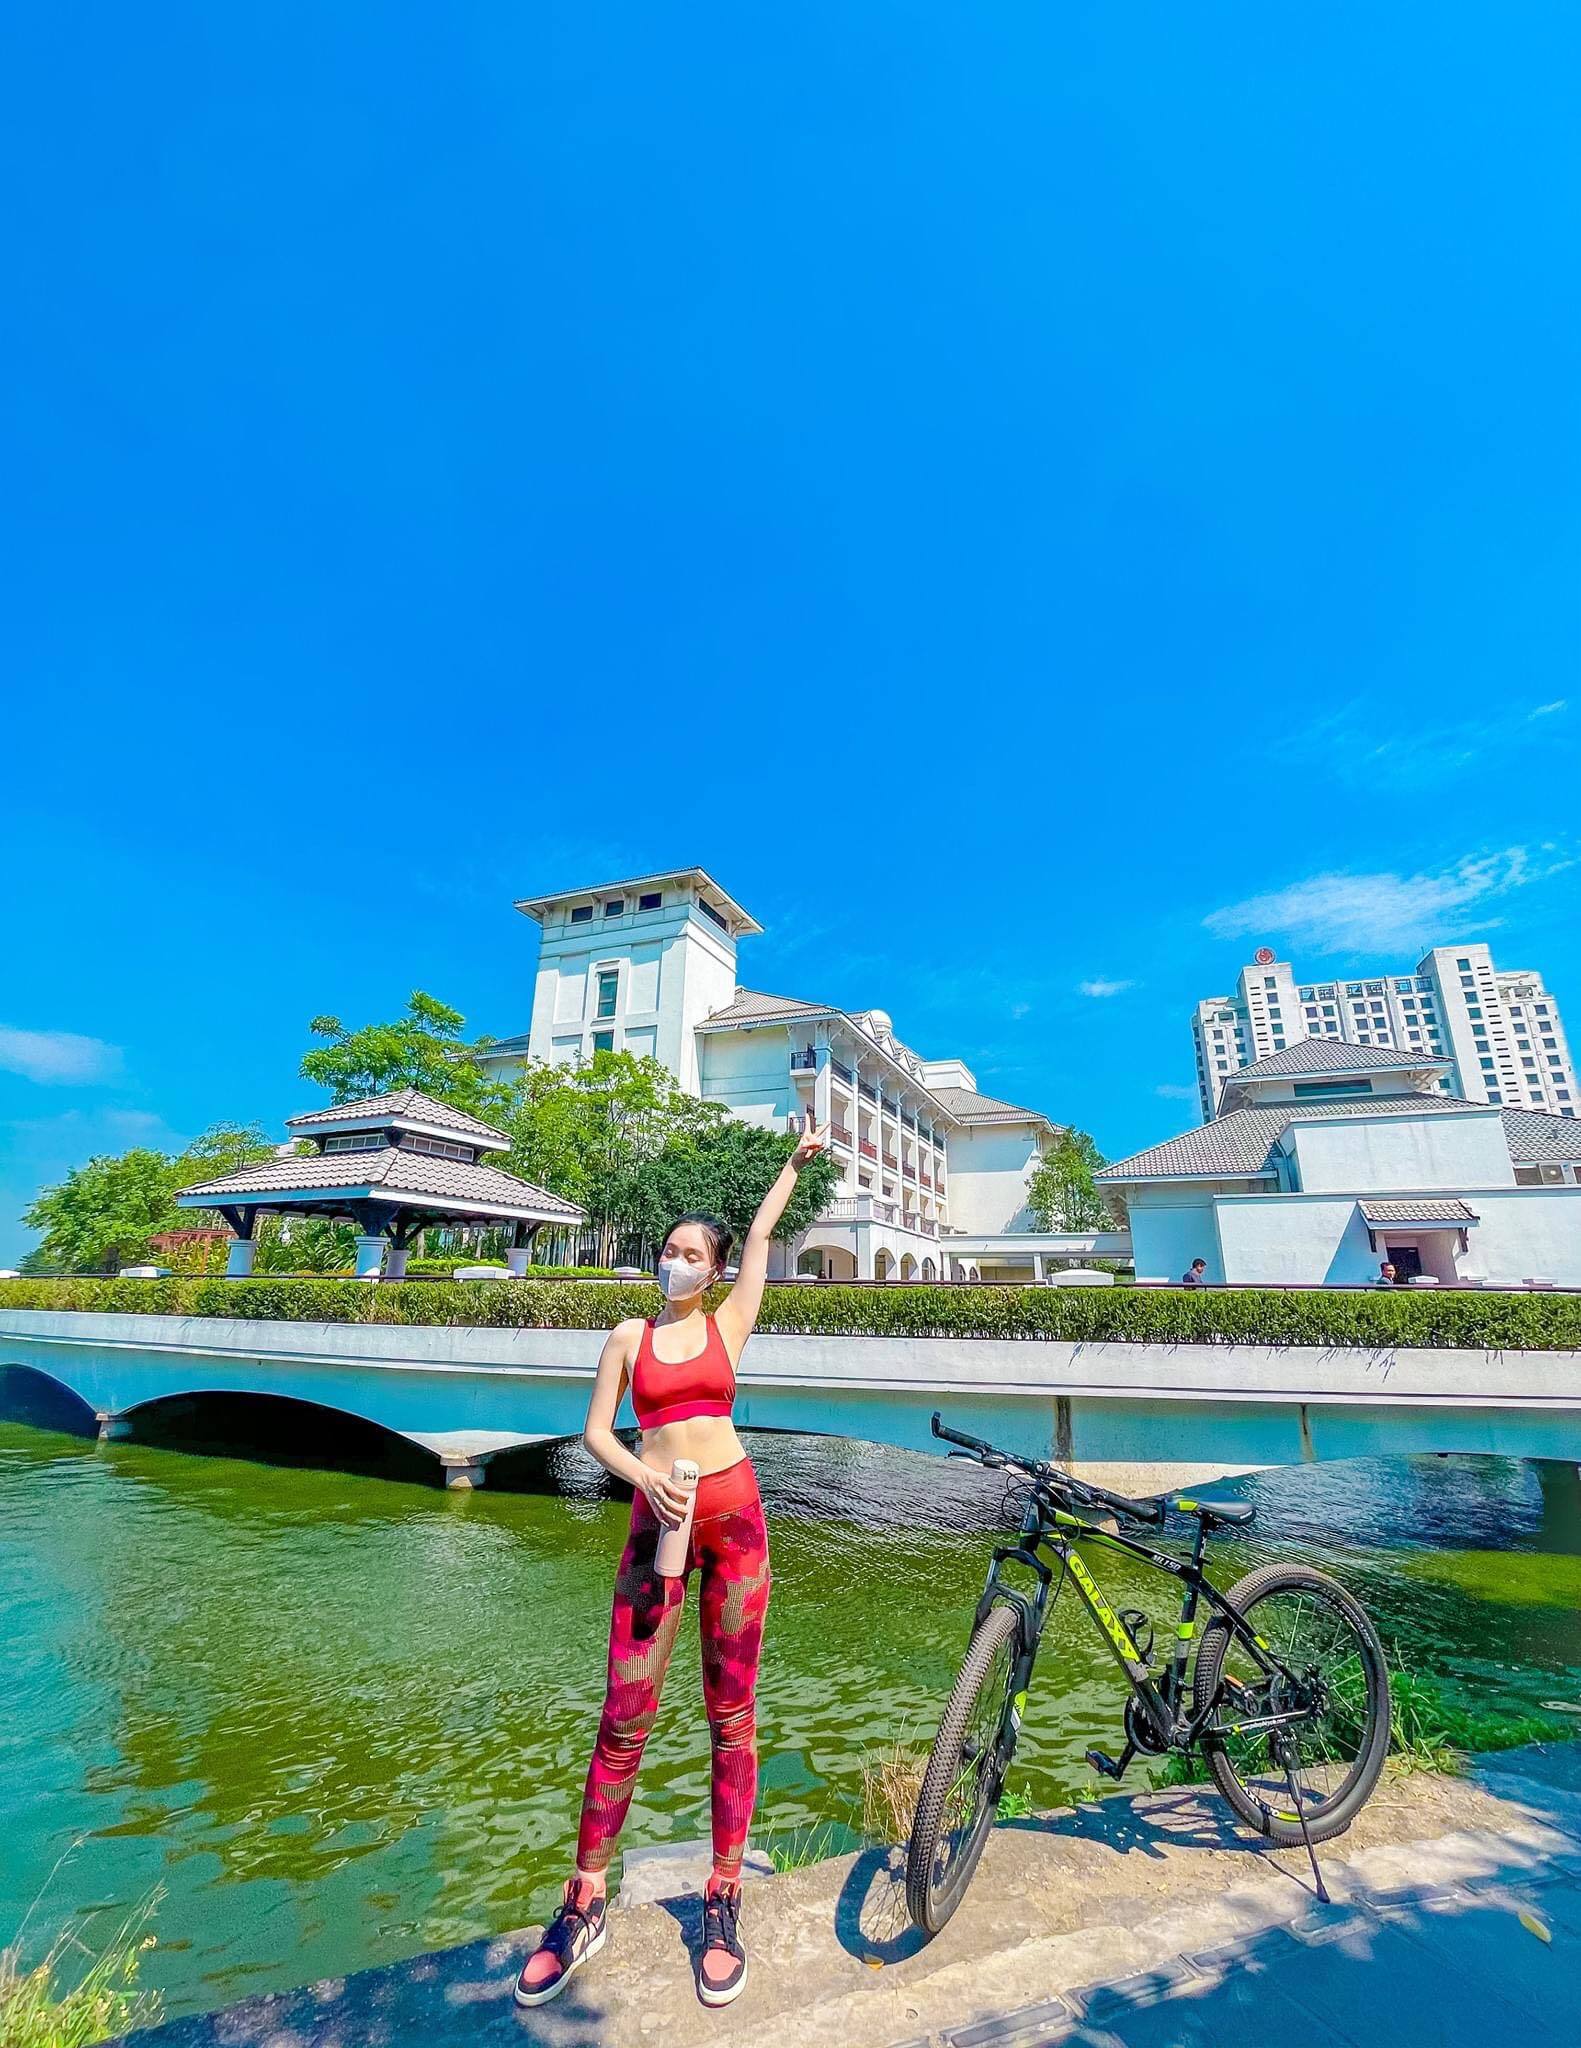 Nguyễn Ngọc Anh,đạp xe,người mẫu ảnh,đeo khẩu trang,nữ sinh